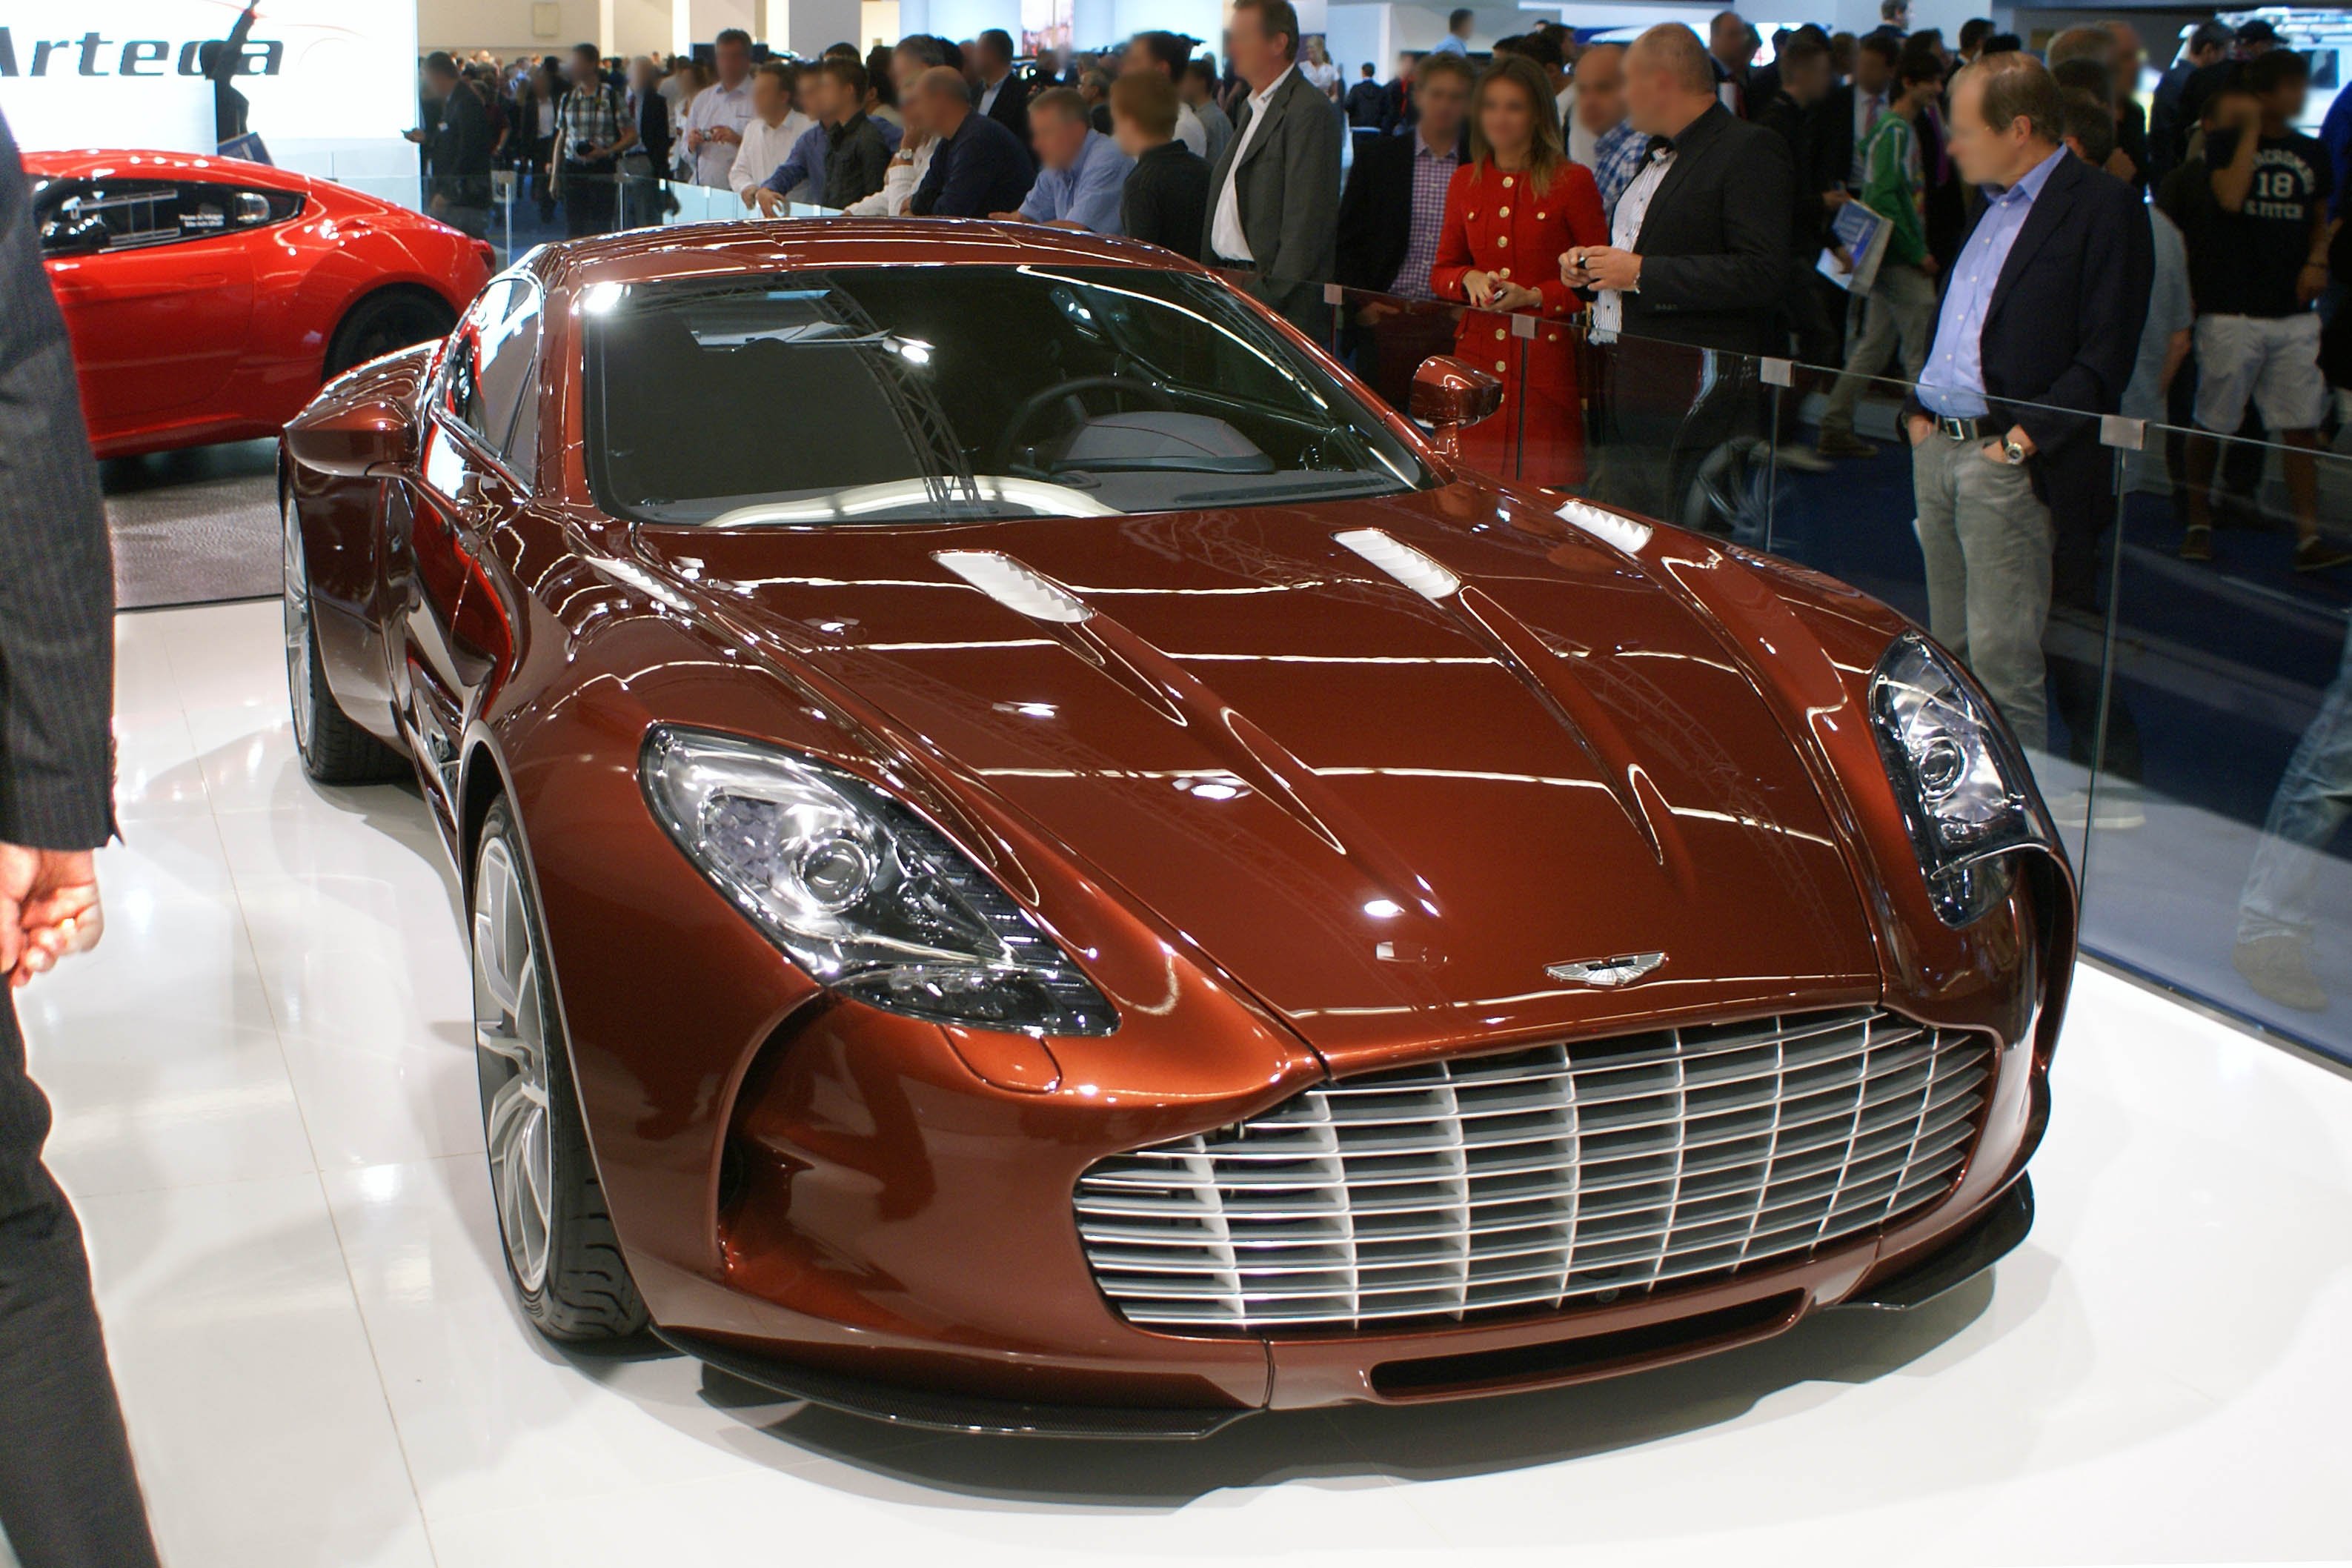 Купить машину за 1000000 рублей. David Brown Aston Martin Tuning. Машина за 1000000. Автомобиль за 1000000 долларов.